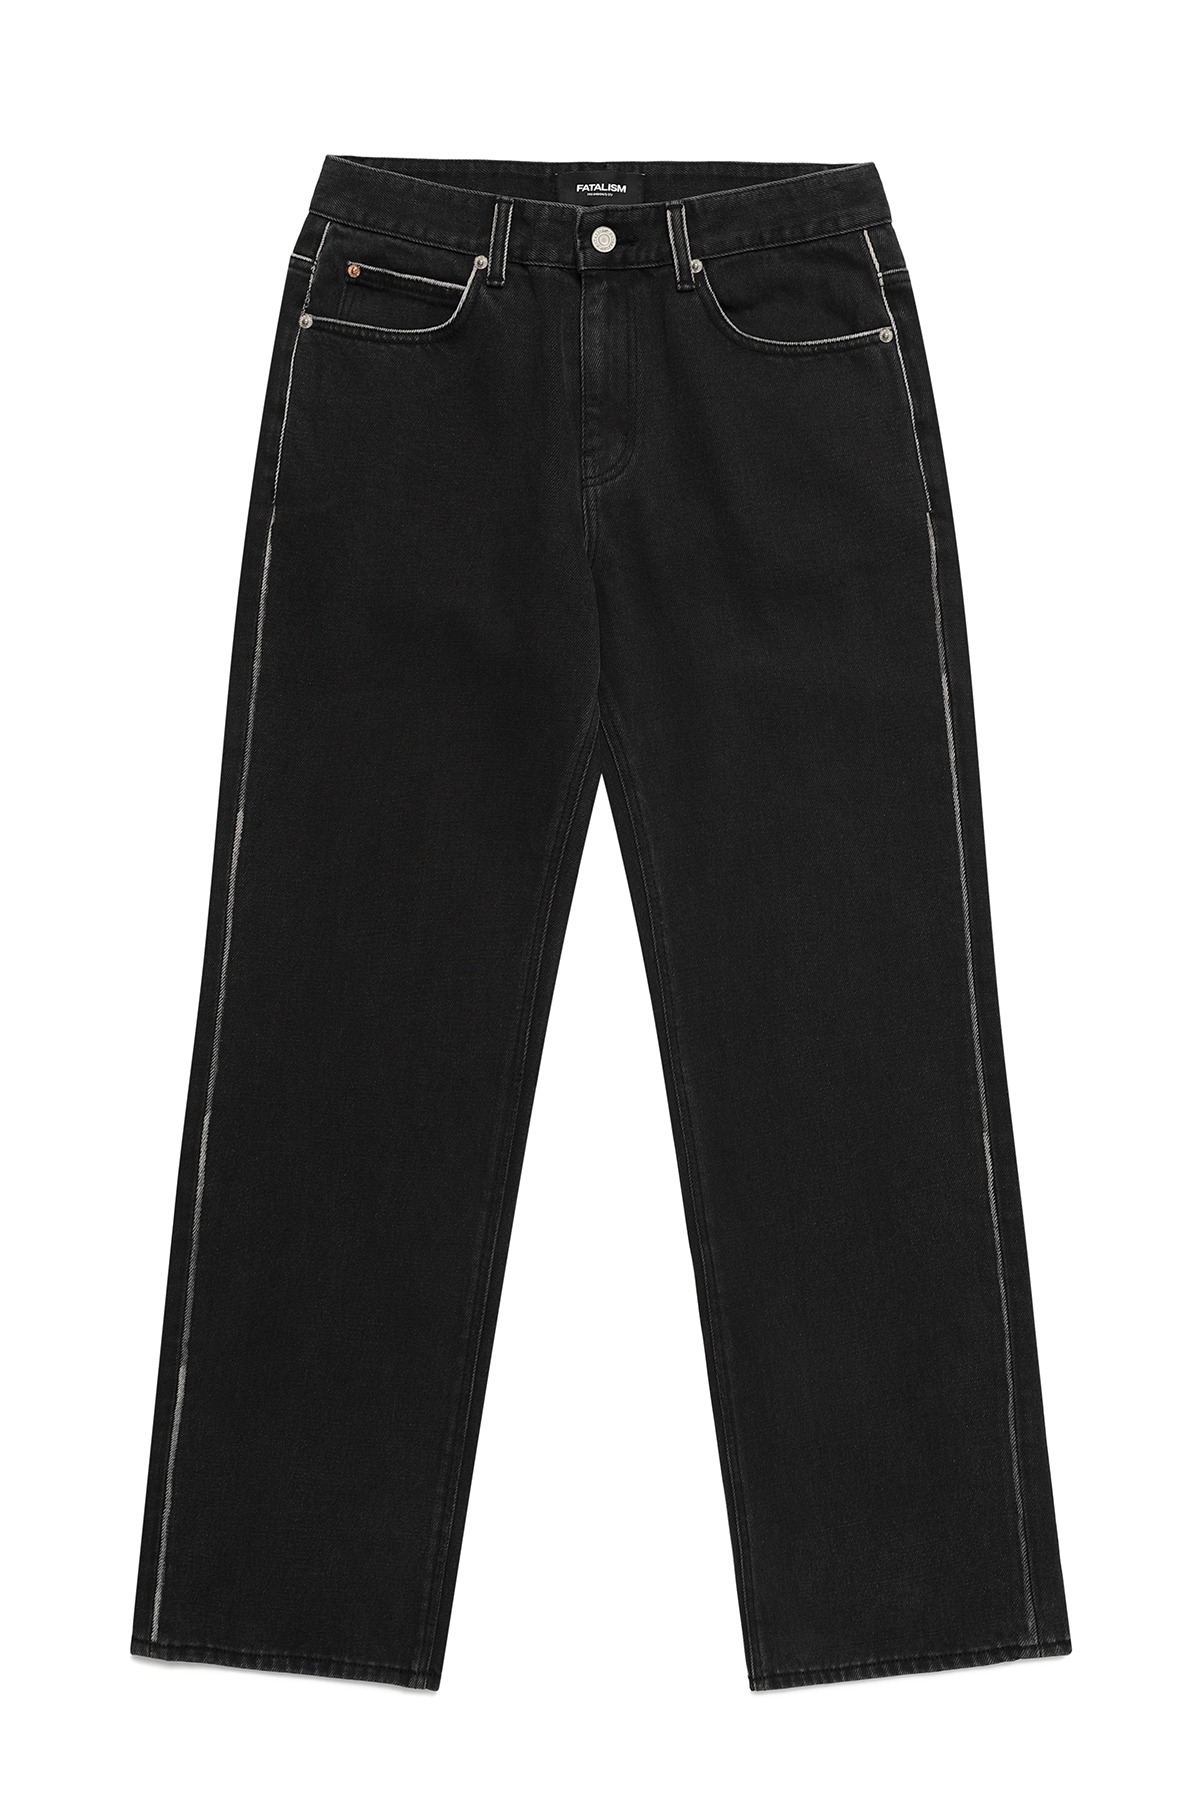 #0304 Side brush black wide jeans